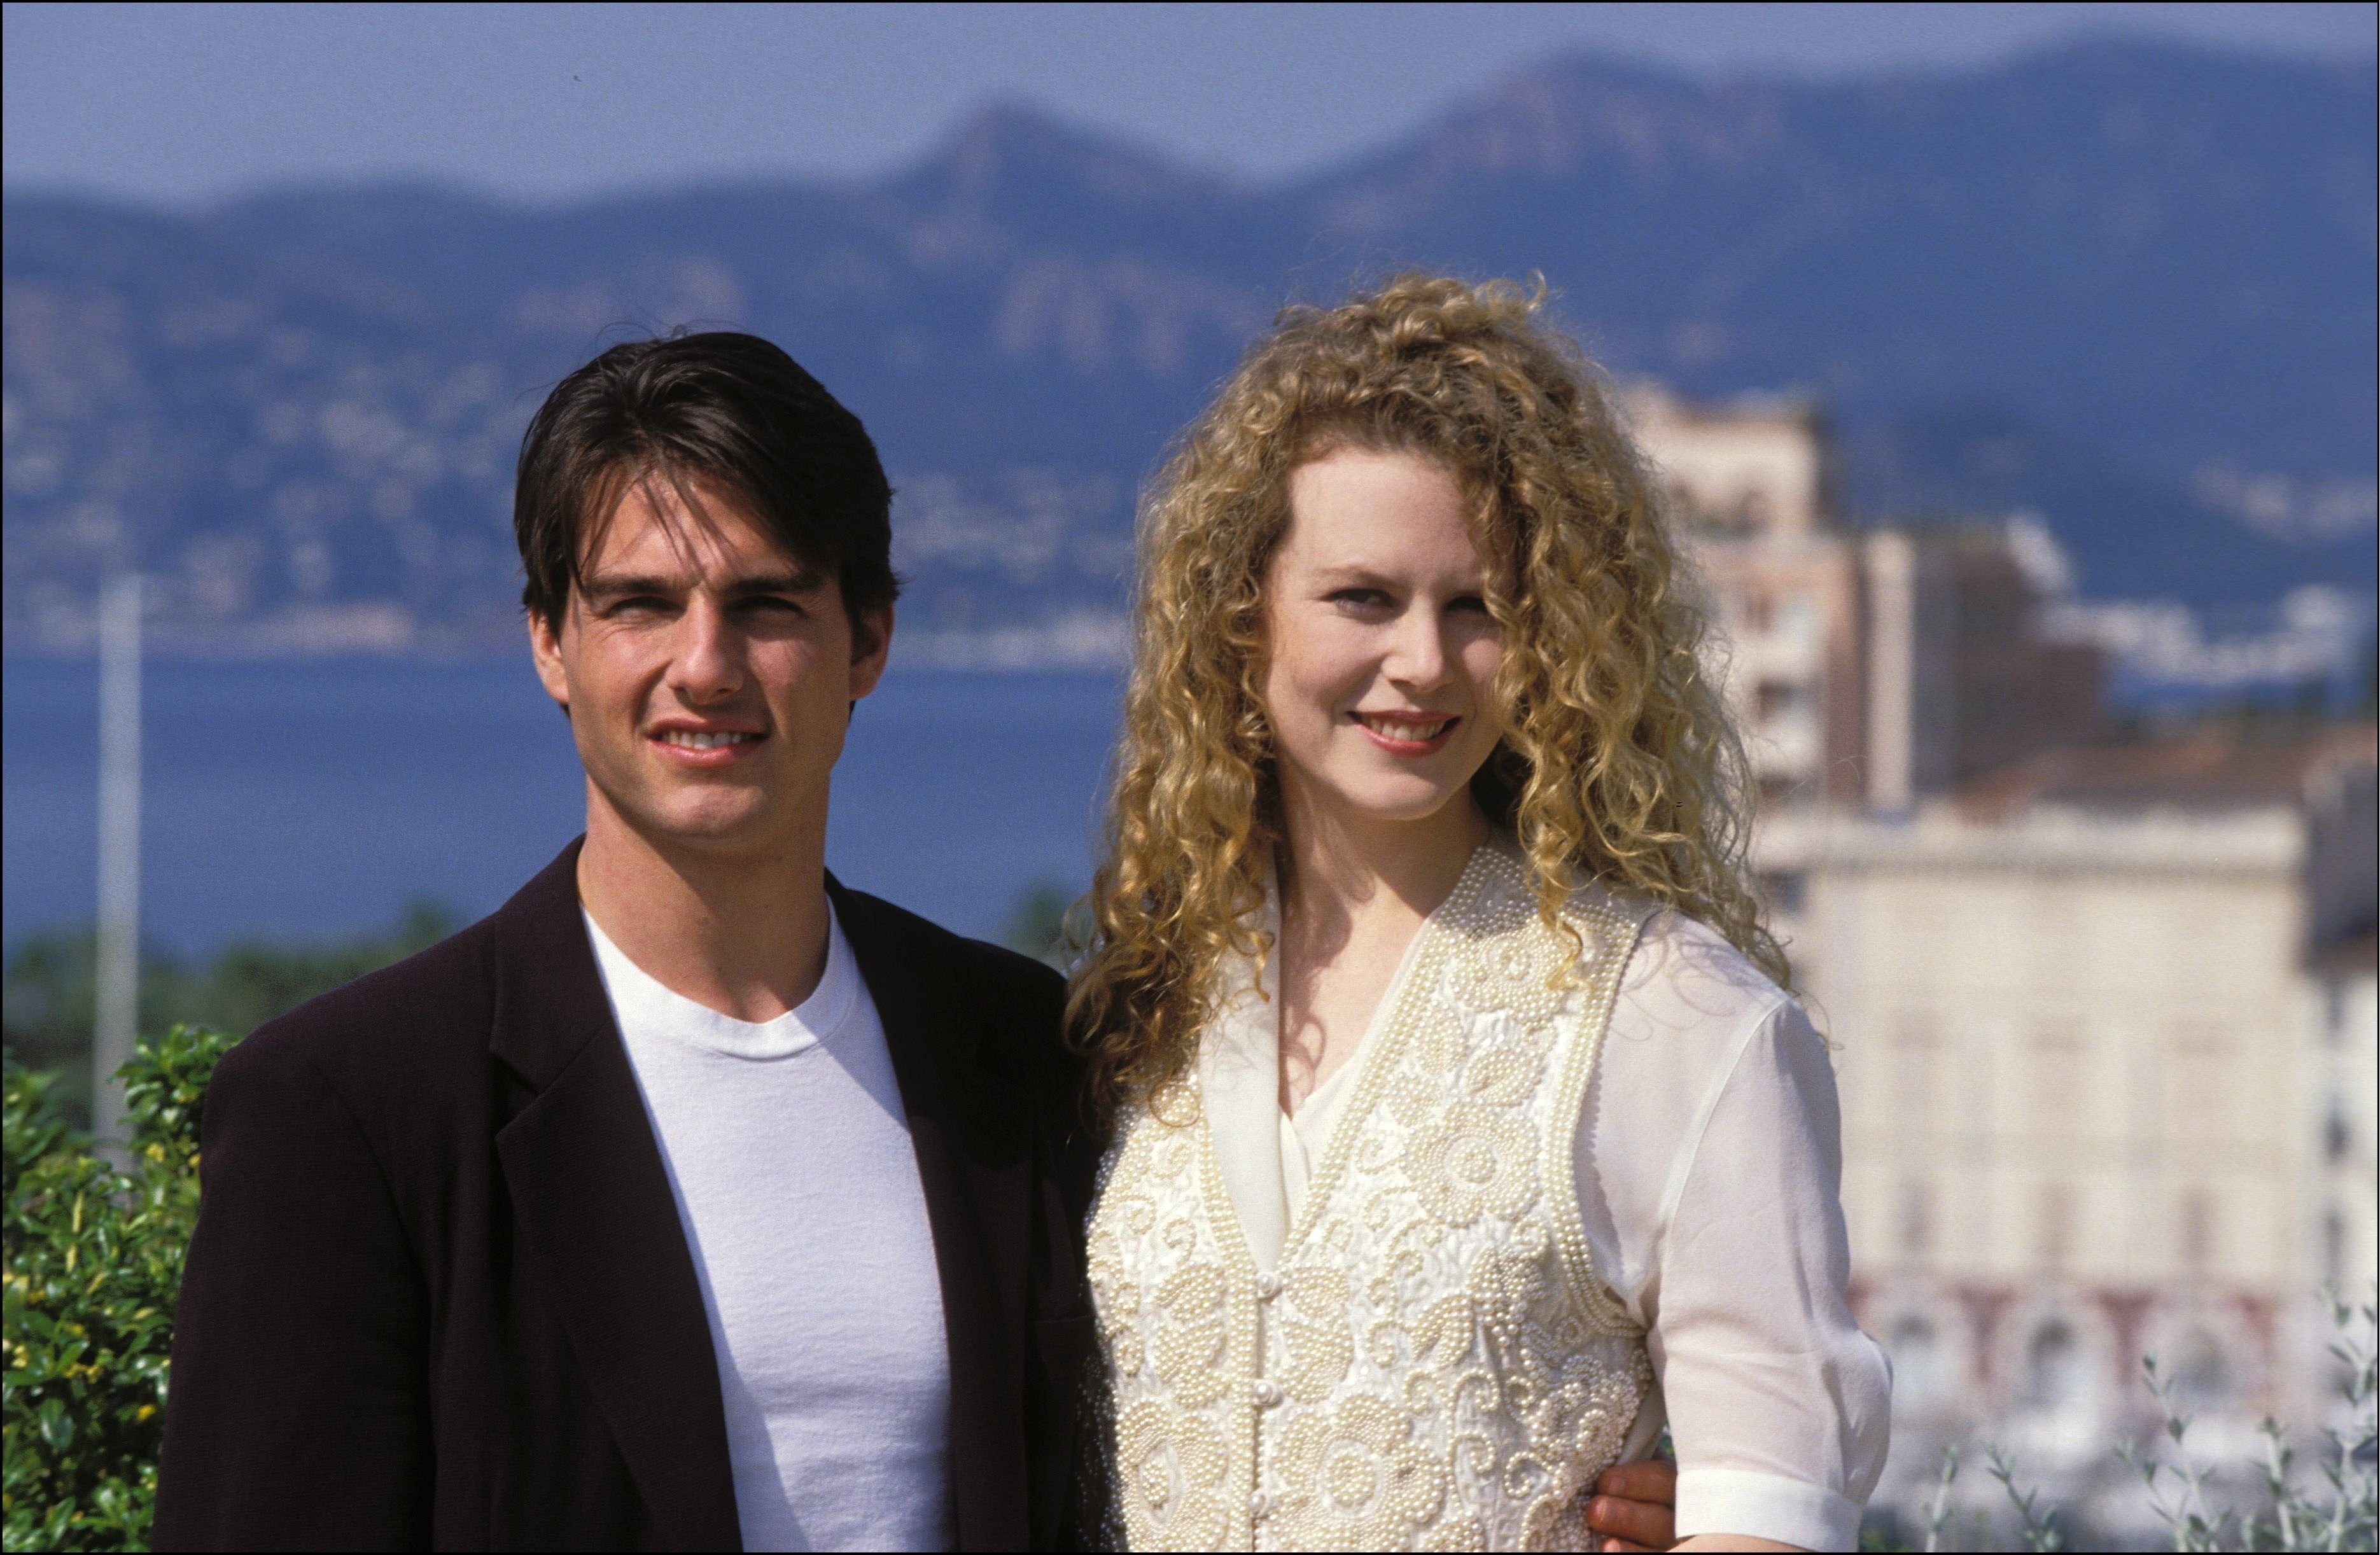 Tom Cruise und Nicole Kidman in Cannes, Frankreich. | Quelle: Getty Images